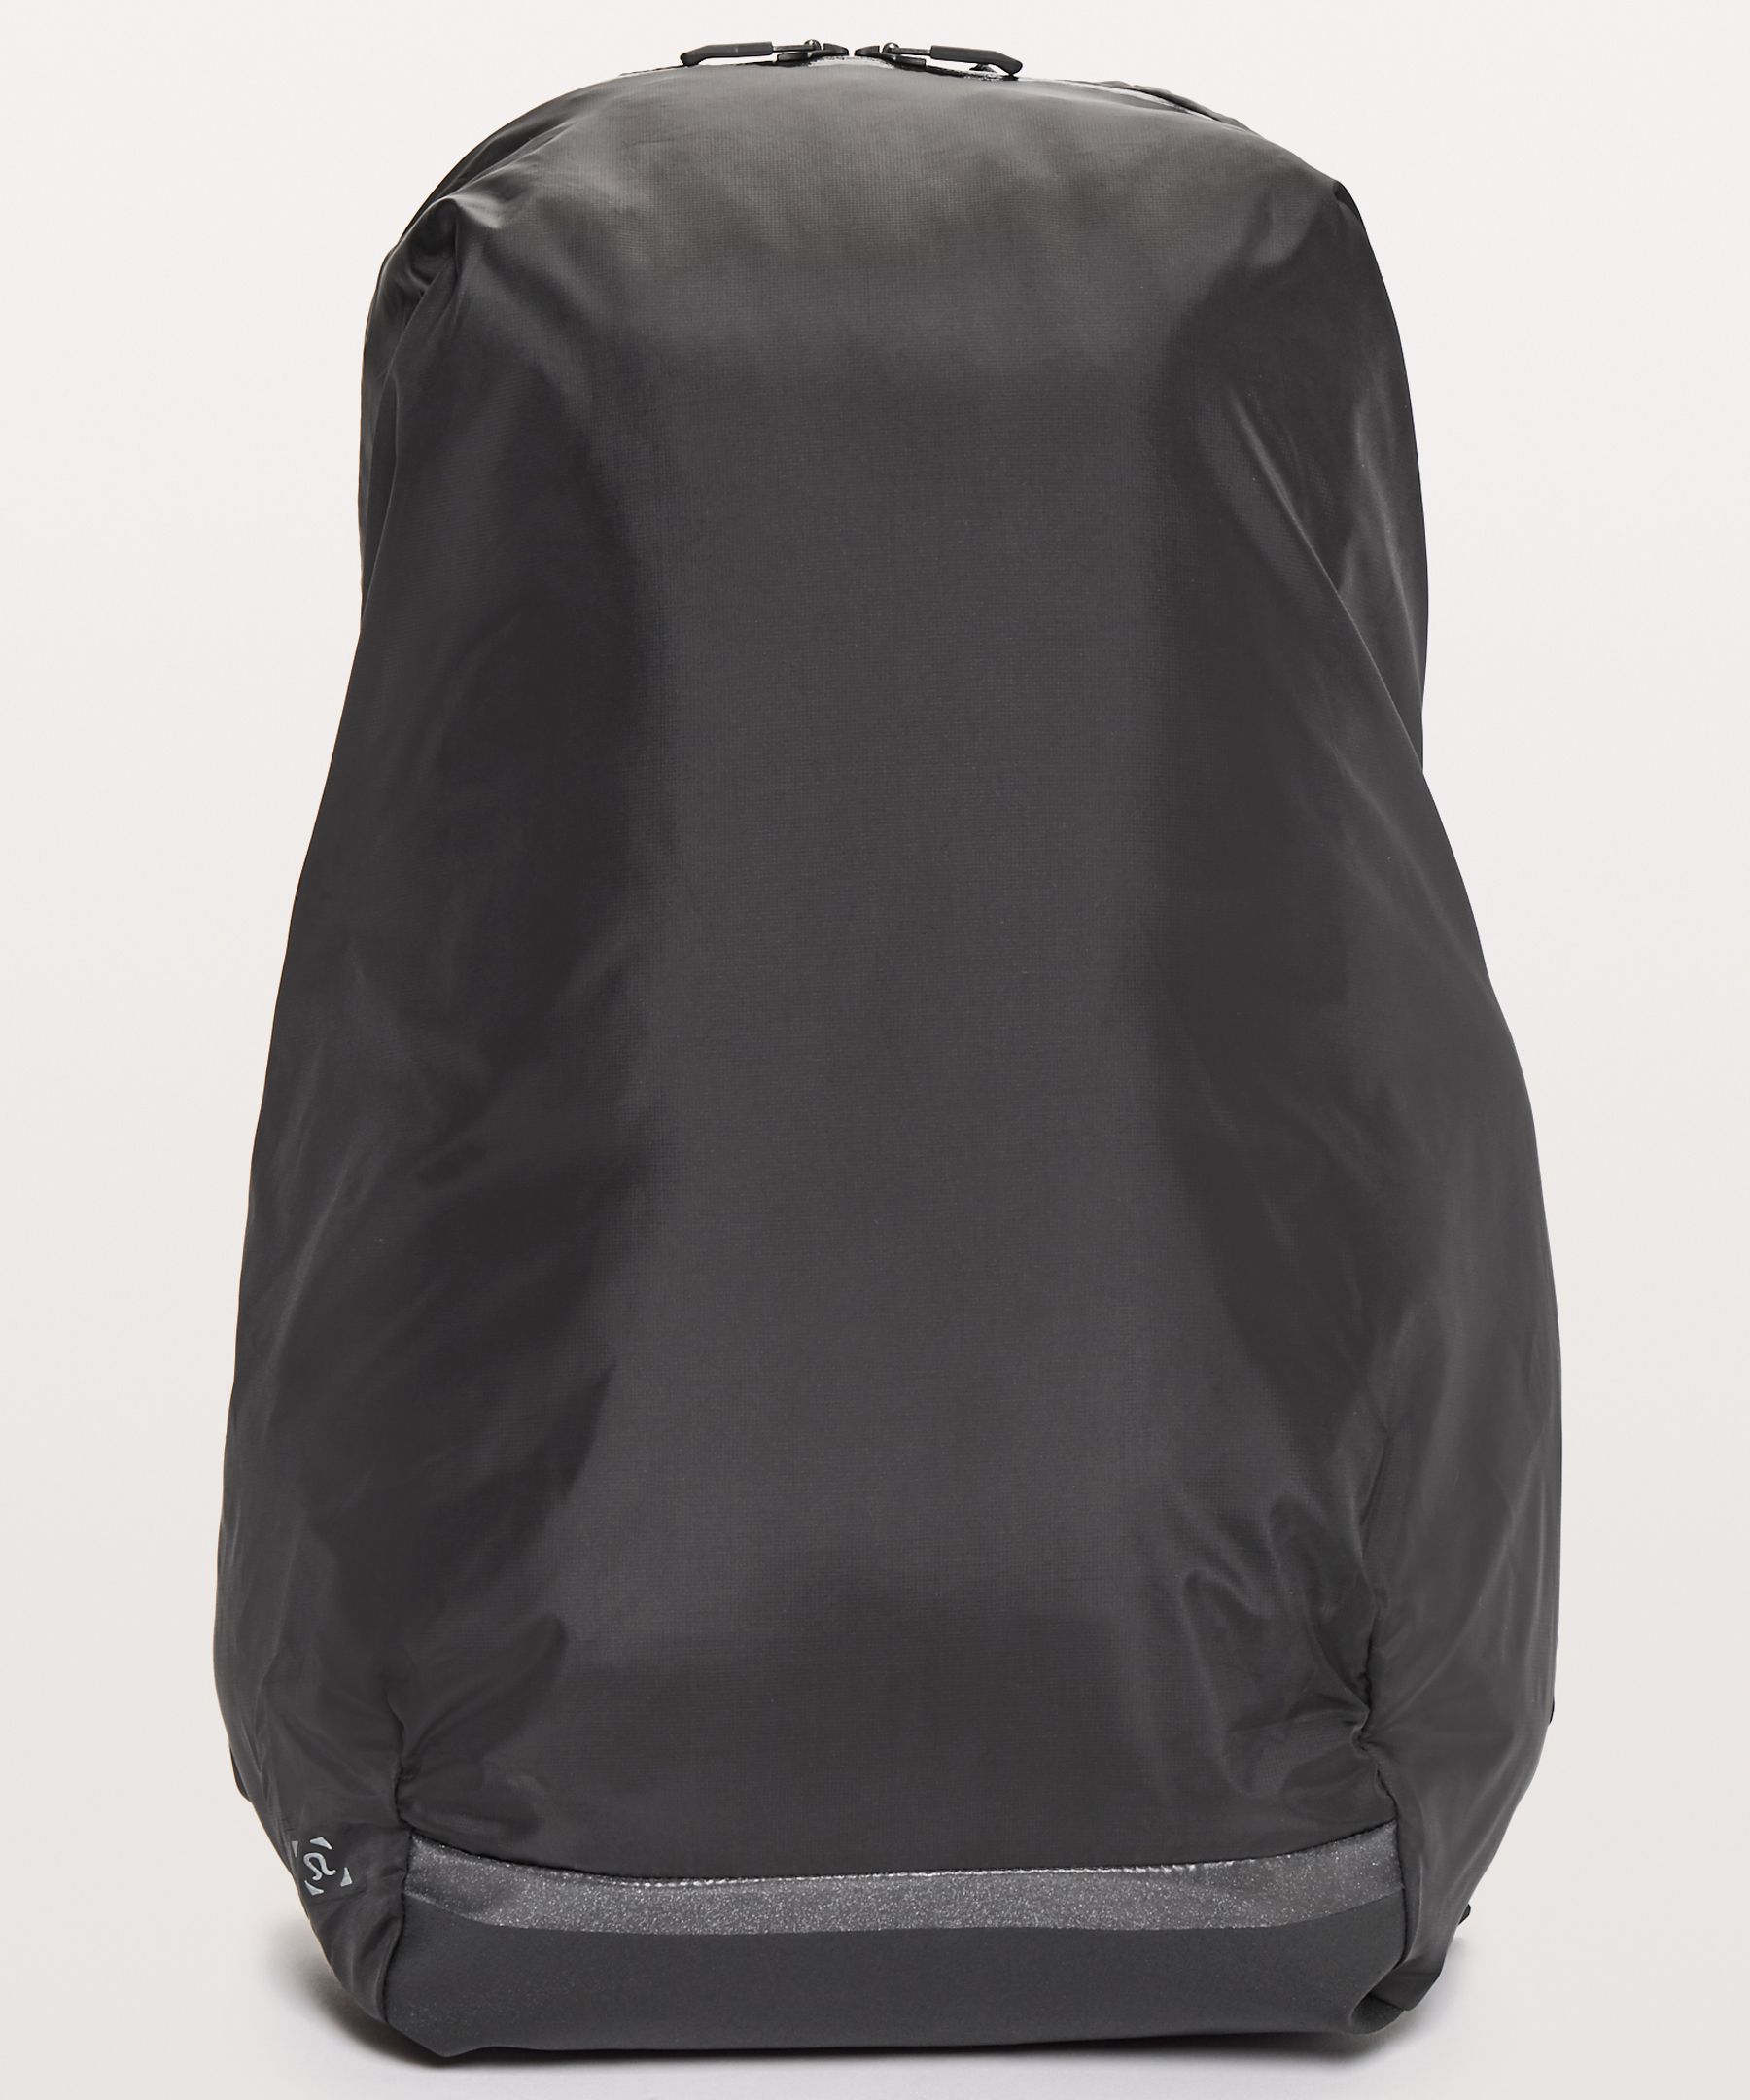 lululemon surge backpack